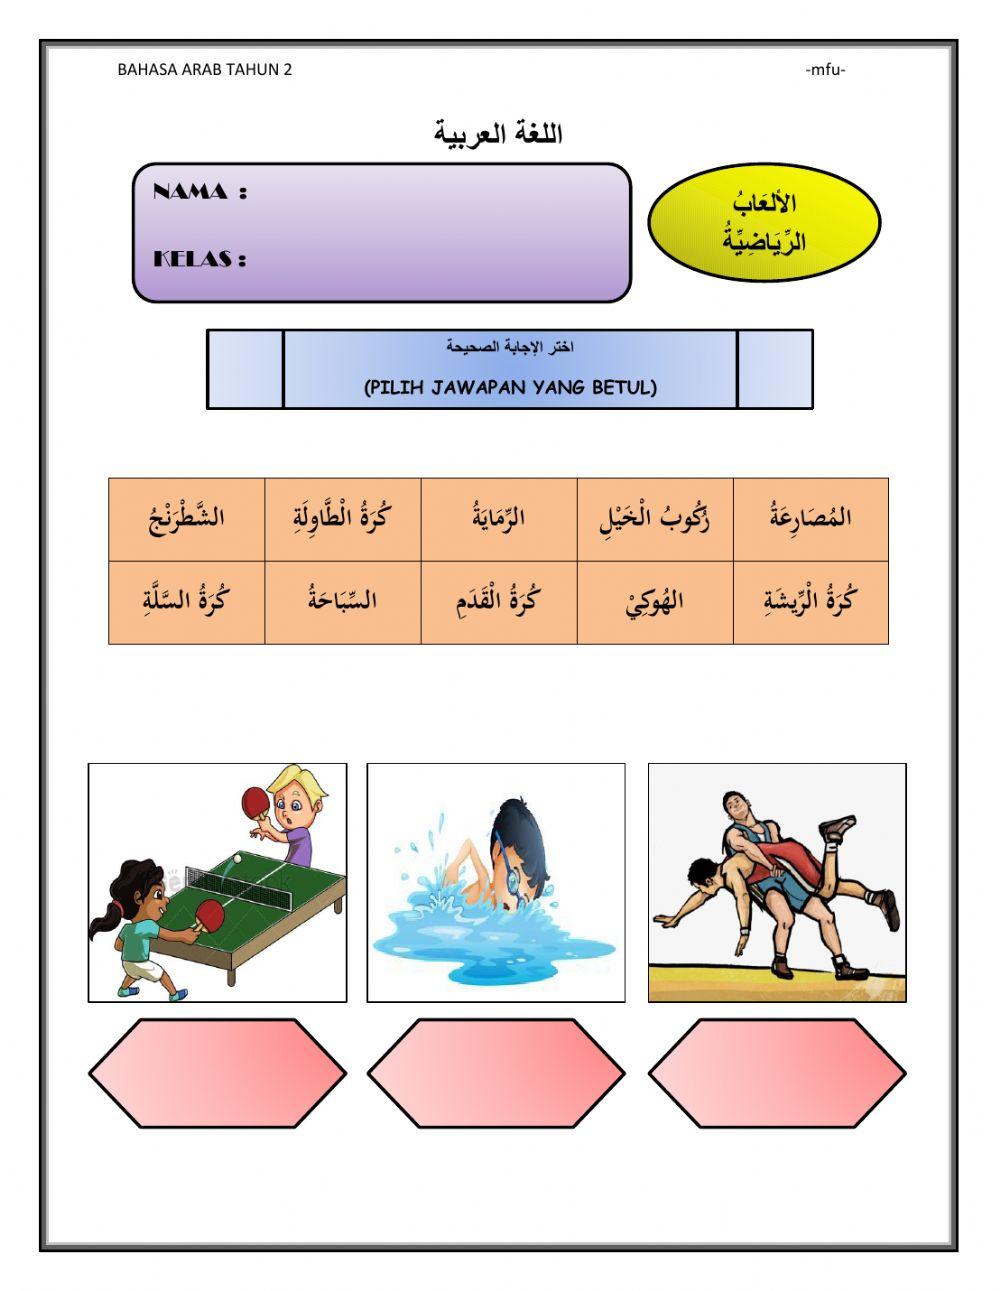 Bahasa arab tahun 2 (sukan dan permainan)